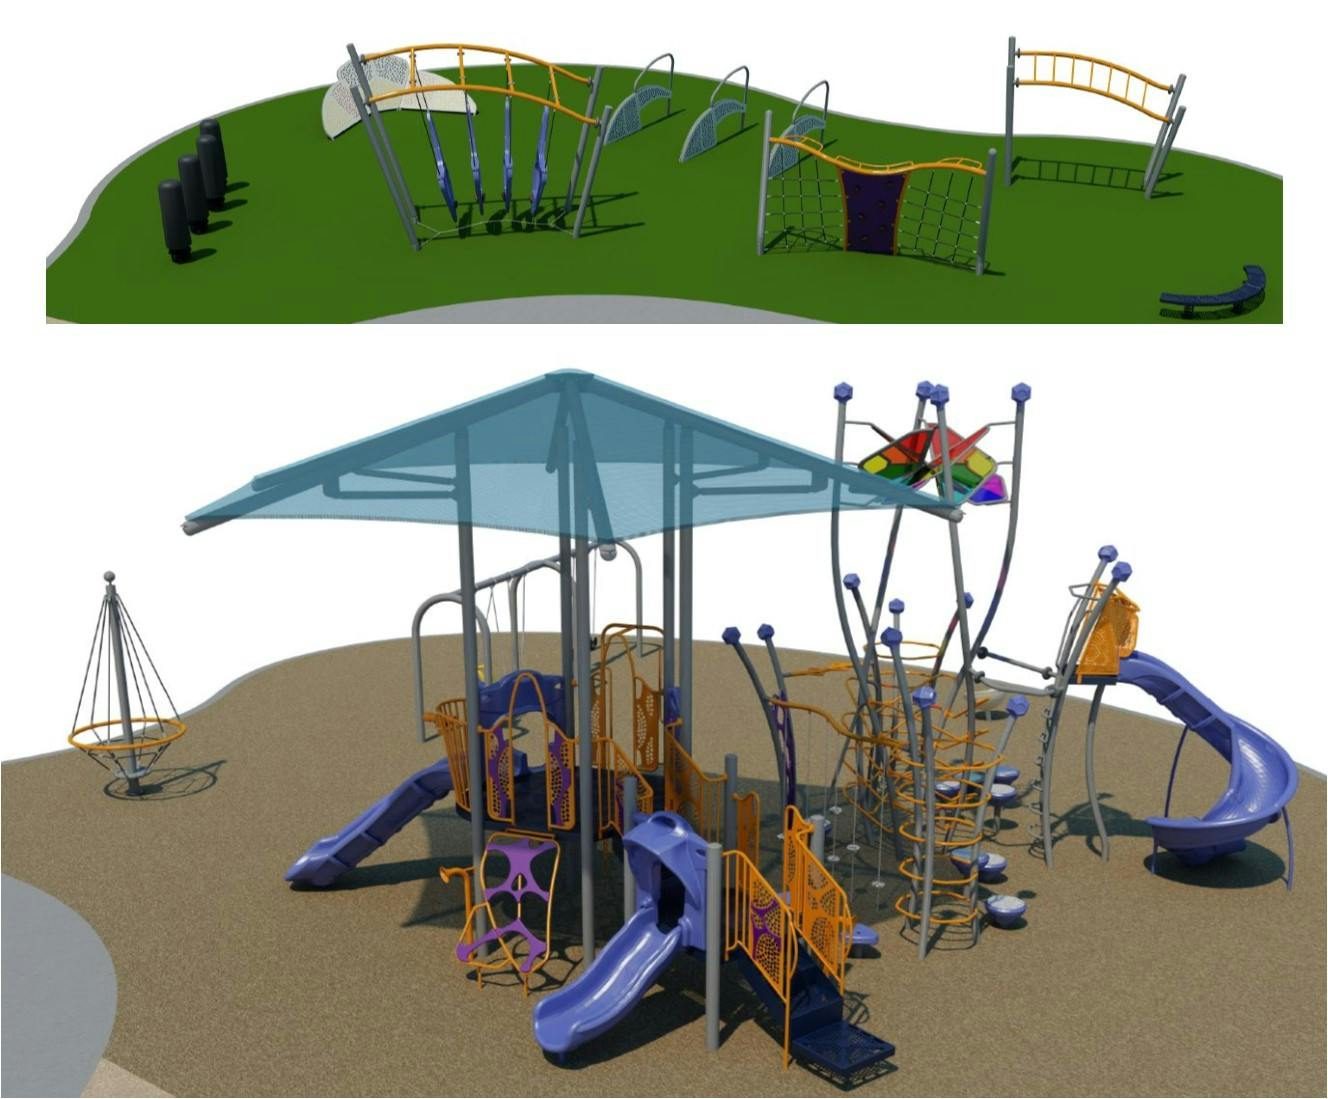 A conceptual design of new play equipment at Crescent Park.